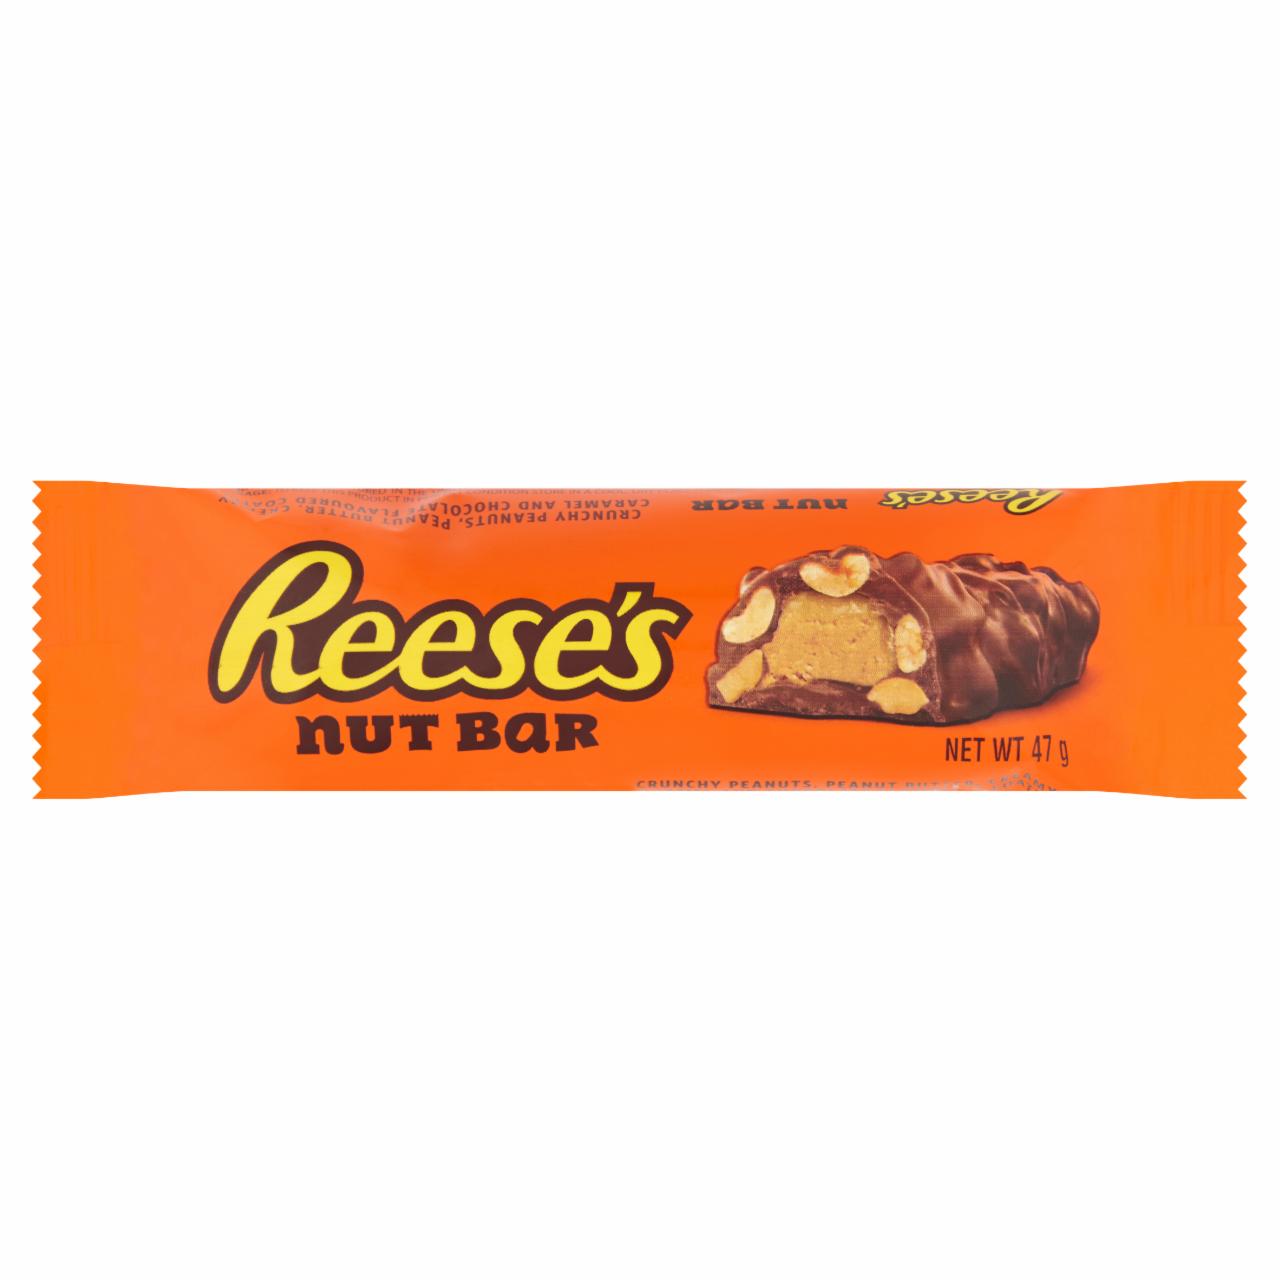 Képek - Reese's Nut Bar ropogós mogyoró, mogyoróvaj, krémes karamell csokoládé ízű bevonóval 47 g